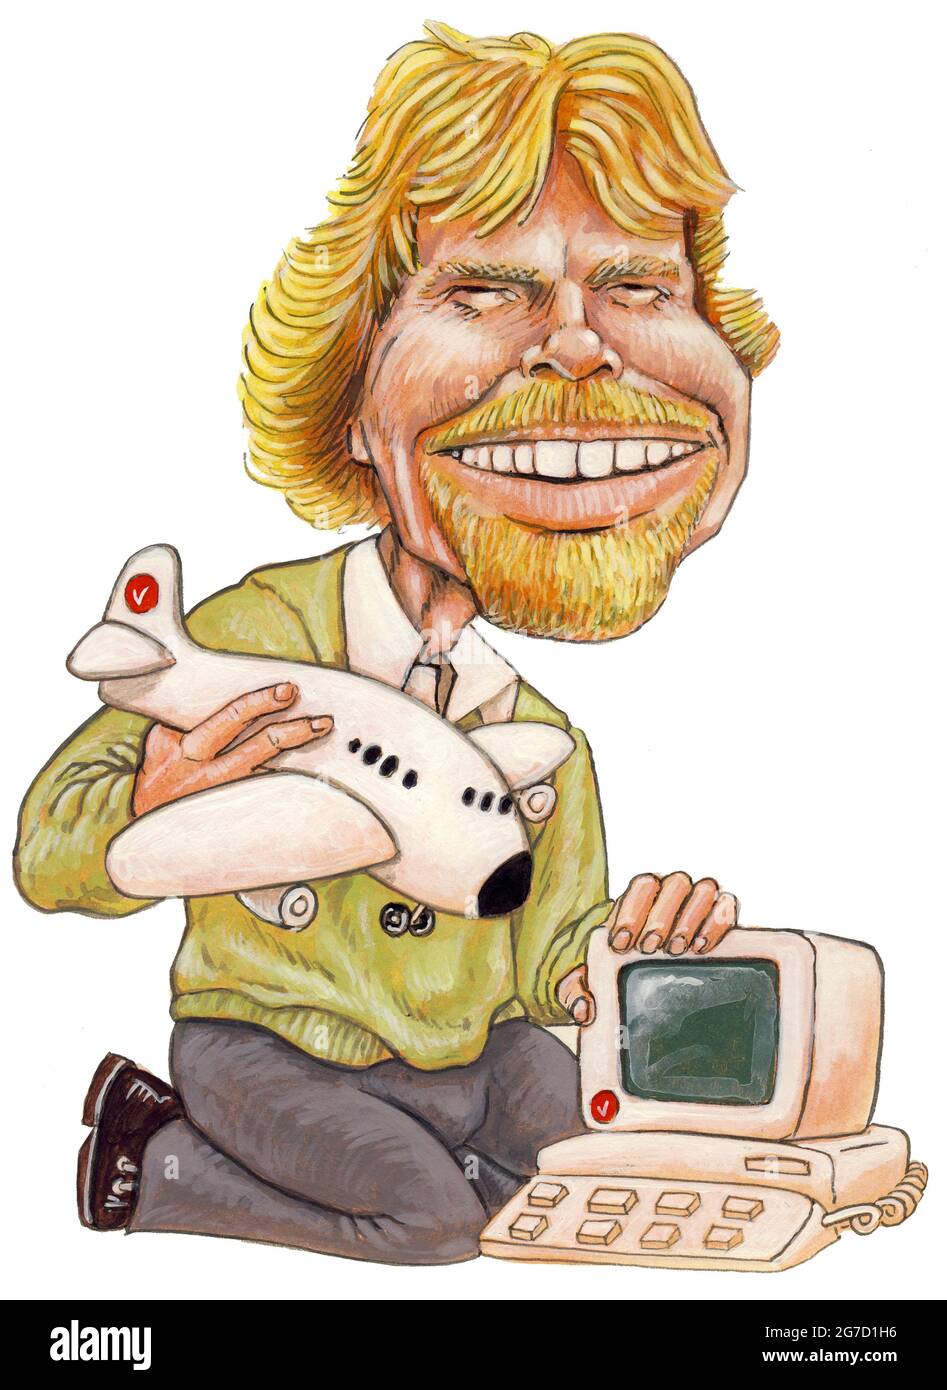 Karikaturendarstellung des Unternehmers und Milliardärs Richard Branson, Gründer von Virgin. Der Cartoon bezieht sich auf seine frühen Spiele und Fluggesellschaften, Stockfoto